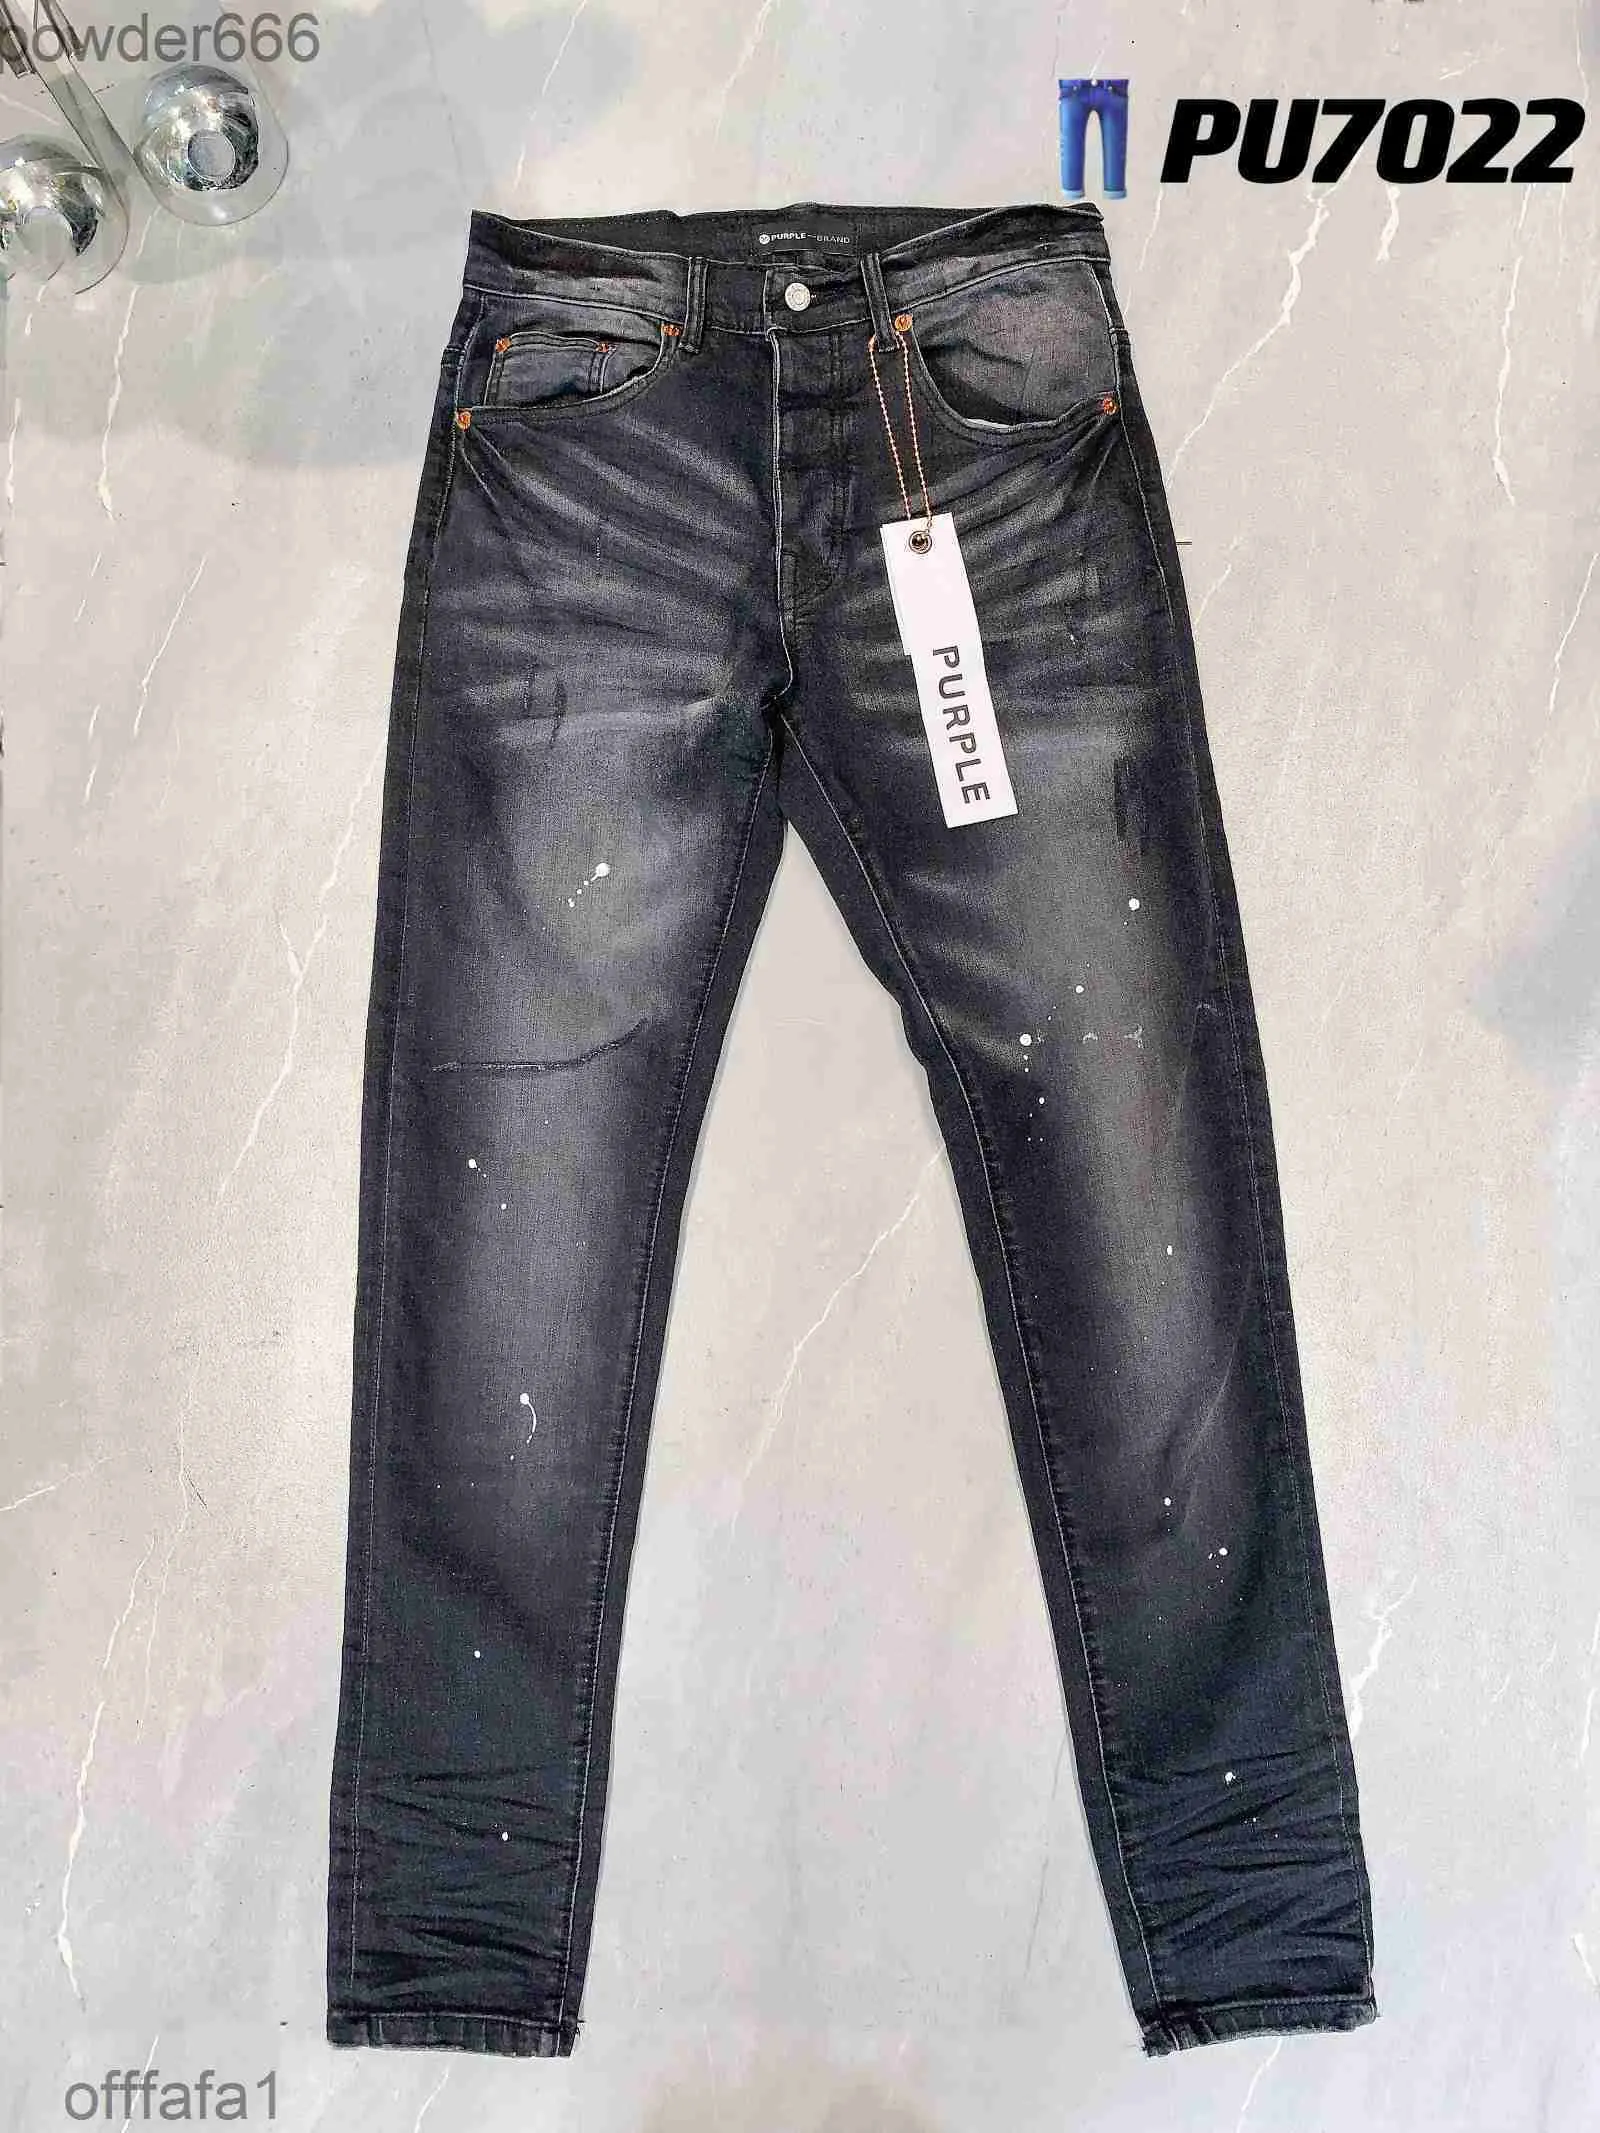 Jeans masculinos roxo mens magro designer rasgado bicicleta magro calças retas dobra moda tendência marca retro hip hop high street 35 ntgpw9xy